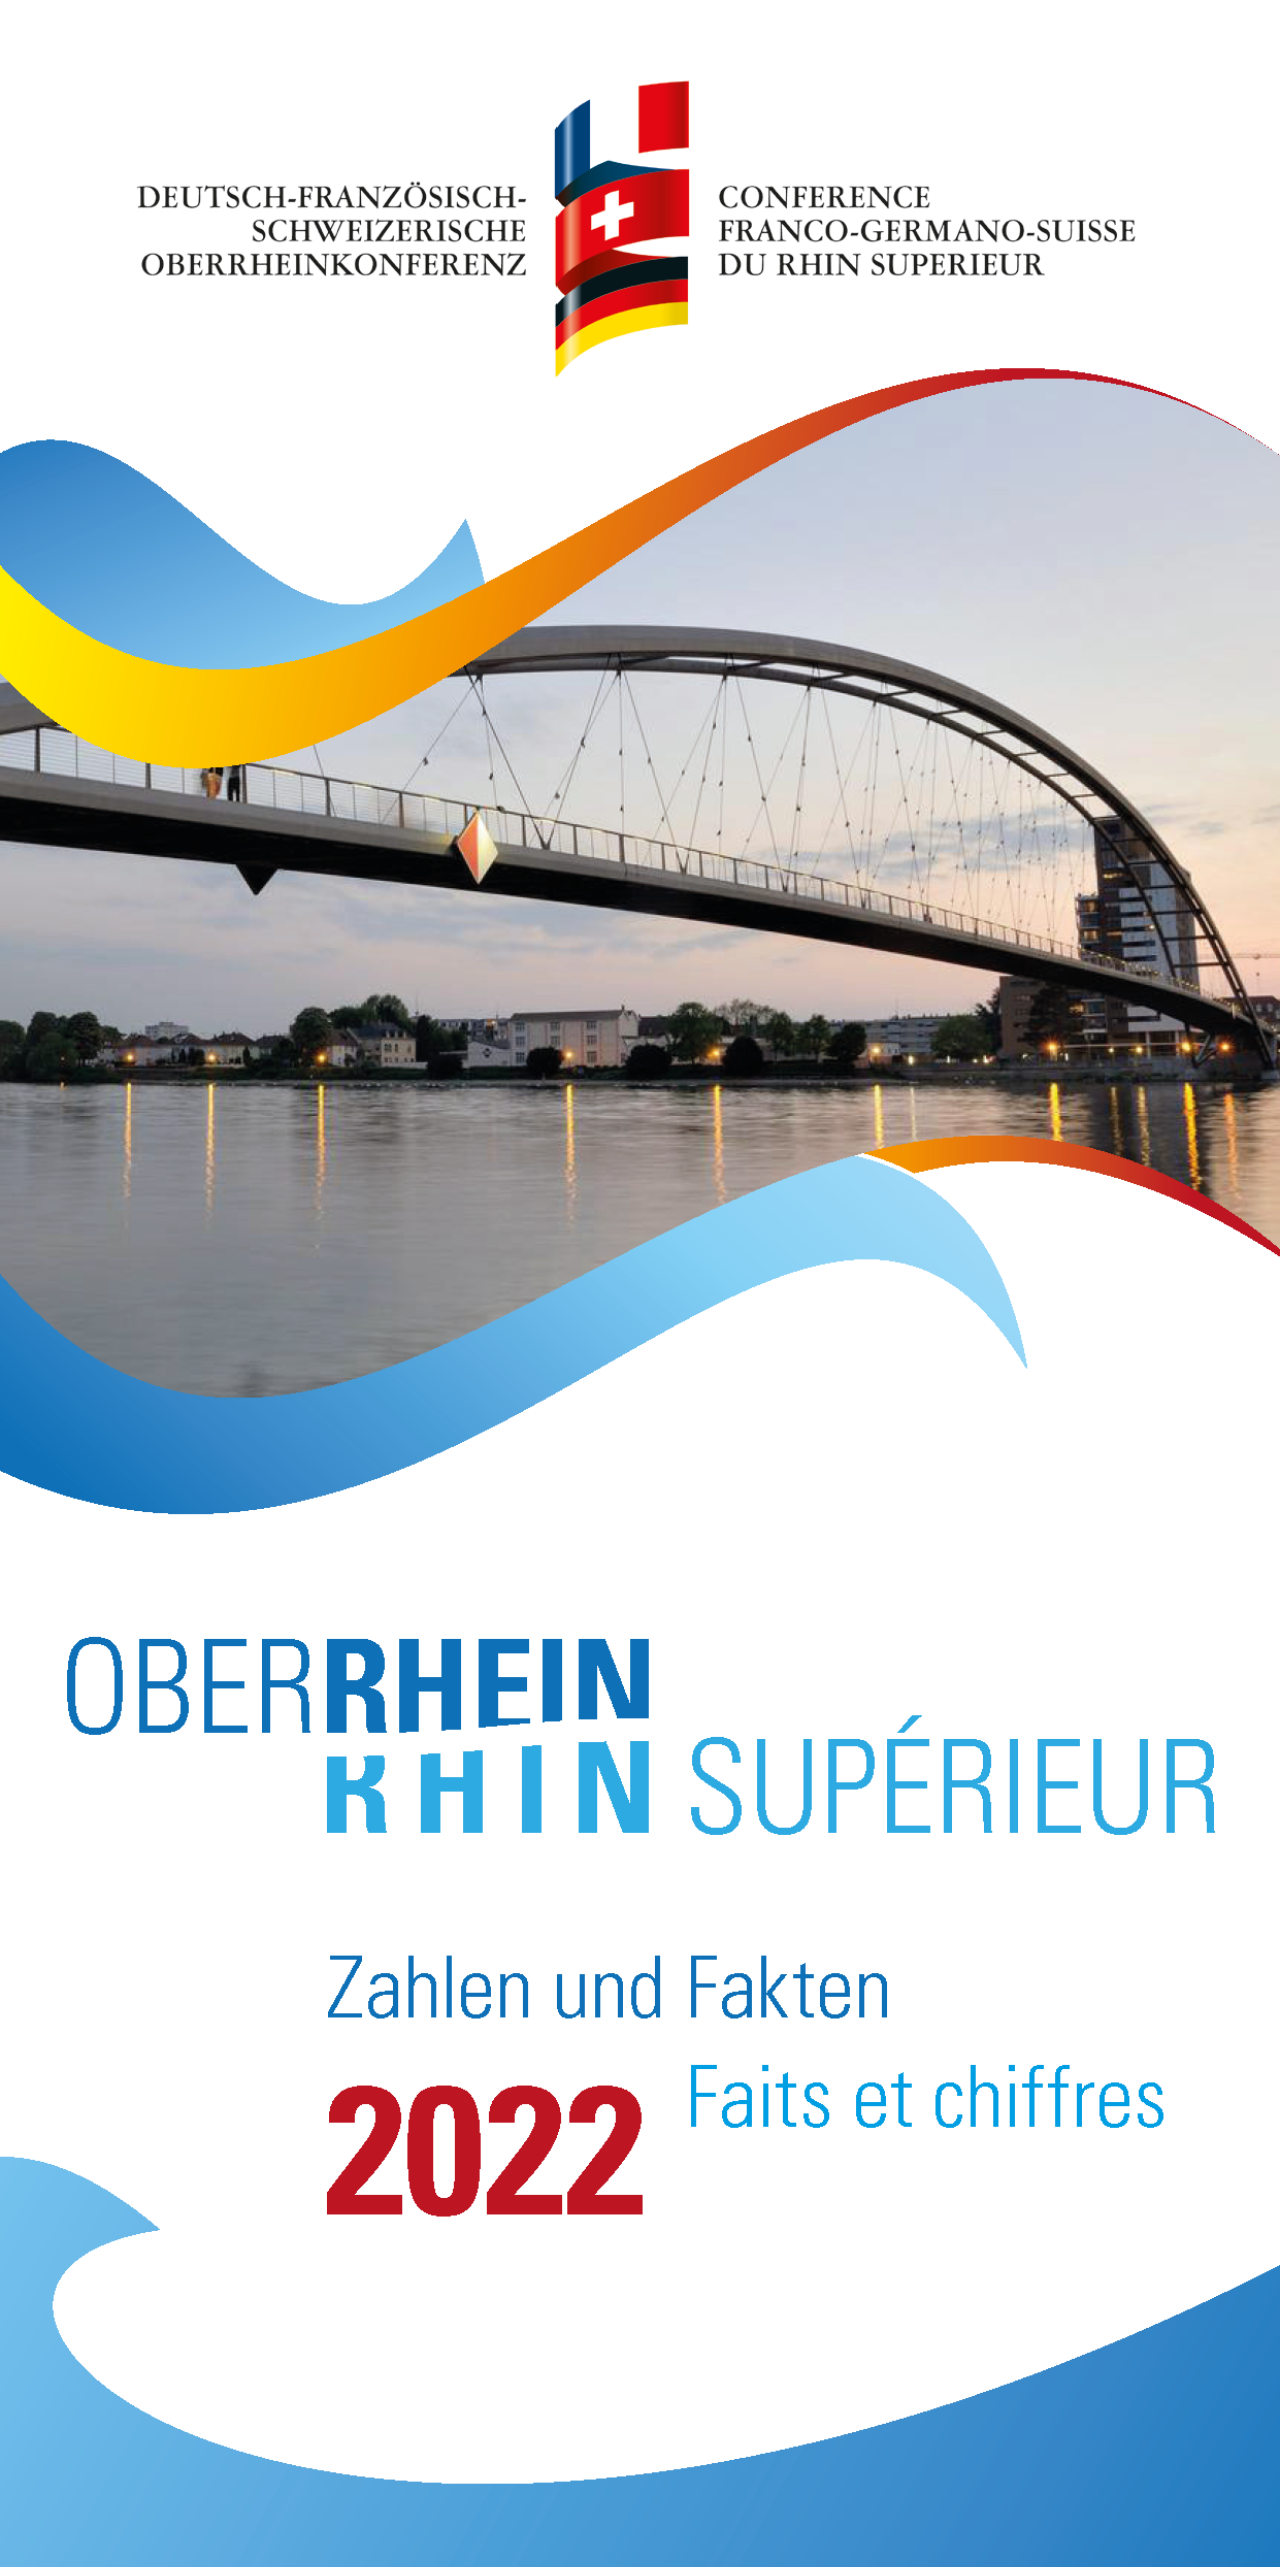 Oberrhein: Zahlen und Fakten 2022. © Oberrheinkonferenz